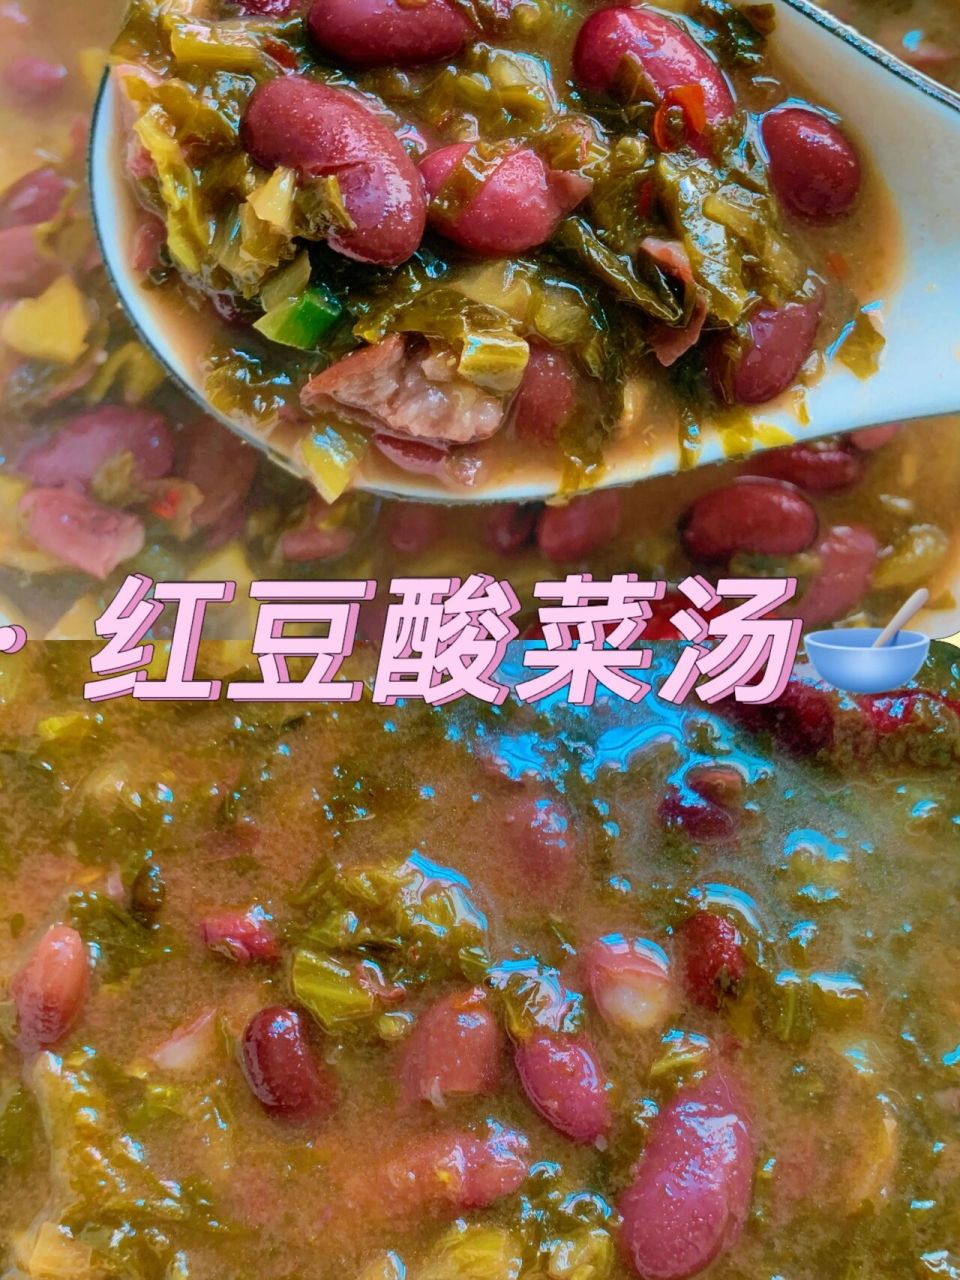 红豆酸菜汤 一款地道云南菜红豆酸菜汤97 红豆酸菜汤 一款地道云南